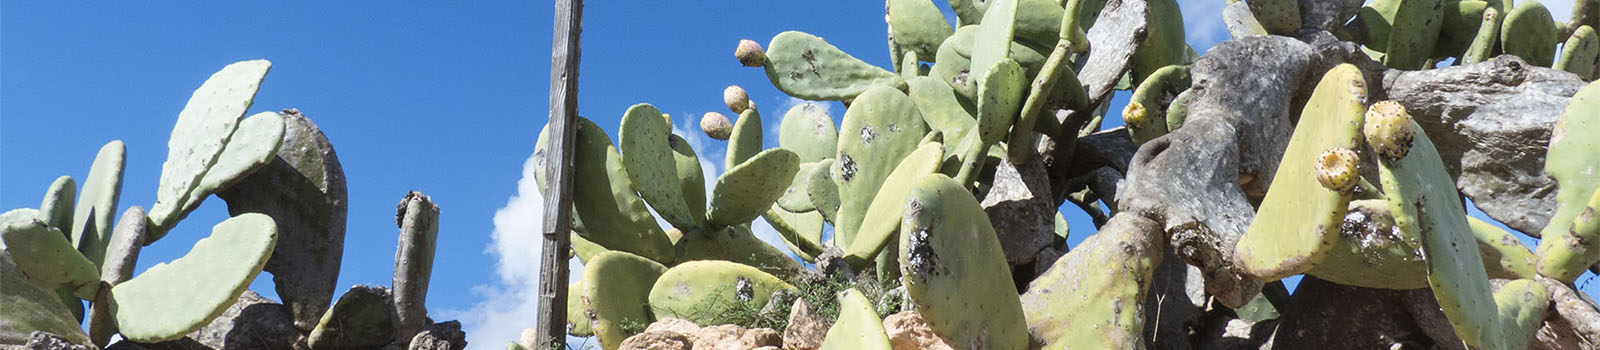 Karmin Gewinnung auf Fuerteventura – Farbstoff aus Cochenille Schildlaus der Opuntie.